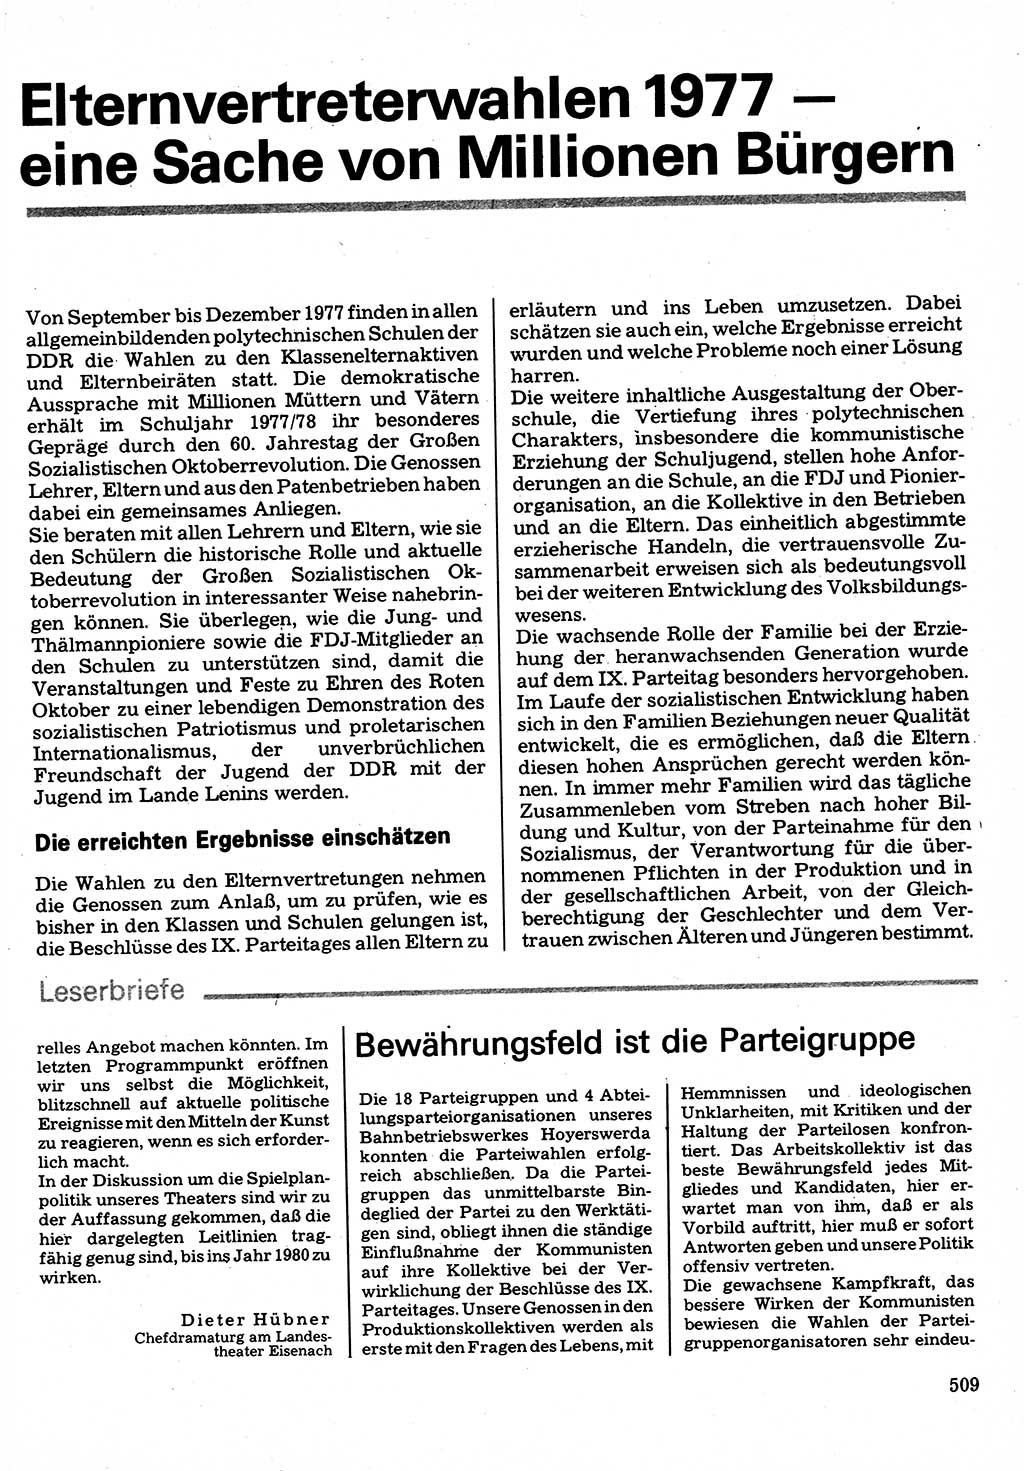 Neuer Weg (NW), Organ des Zentralkomitees (ZK) der SED (Sozialistische Einheitspartei Deutschlands) für Fragen des Parteilebens, 32. Jahrgang [Deutsche Demokratische Republik (DDR)] 1977, Seite 509 (NW ZK SED DDR 1977, S. 509)